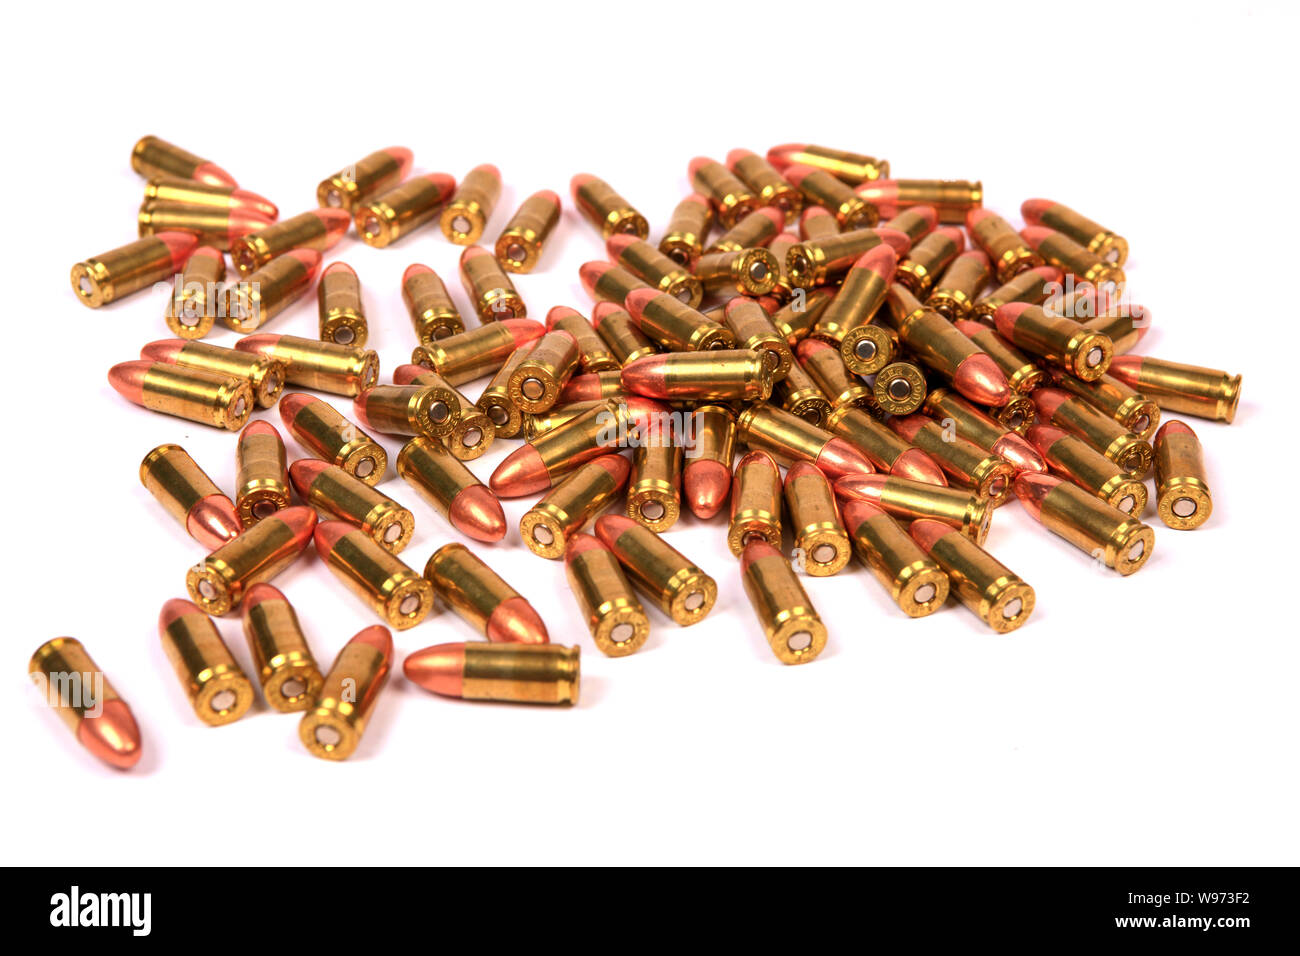 100 Umläufe von 9 mm Luger Messing mit Kupfer Tipps ammuntion Stockfoto